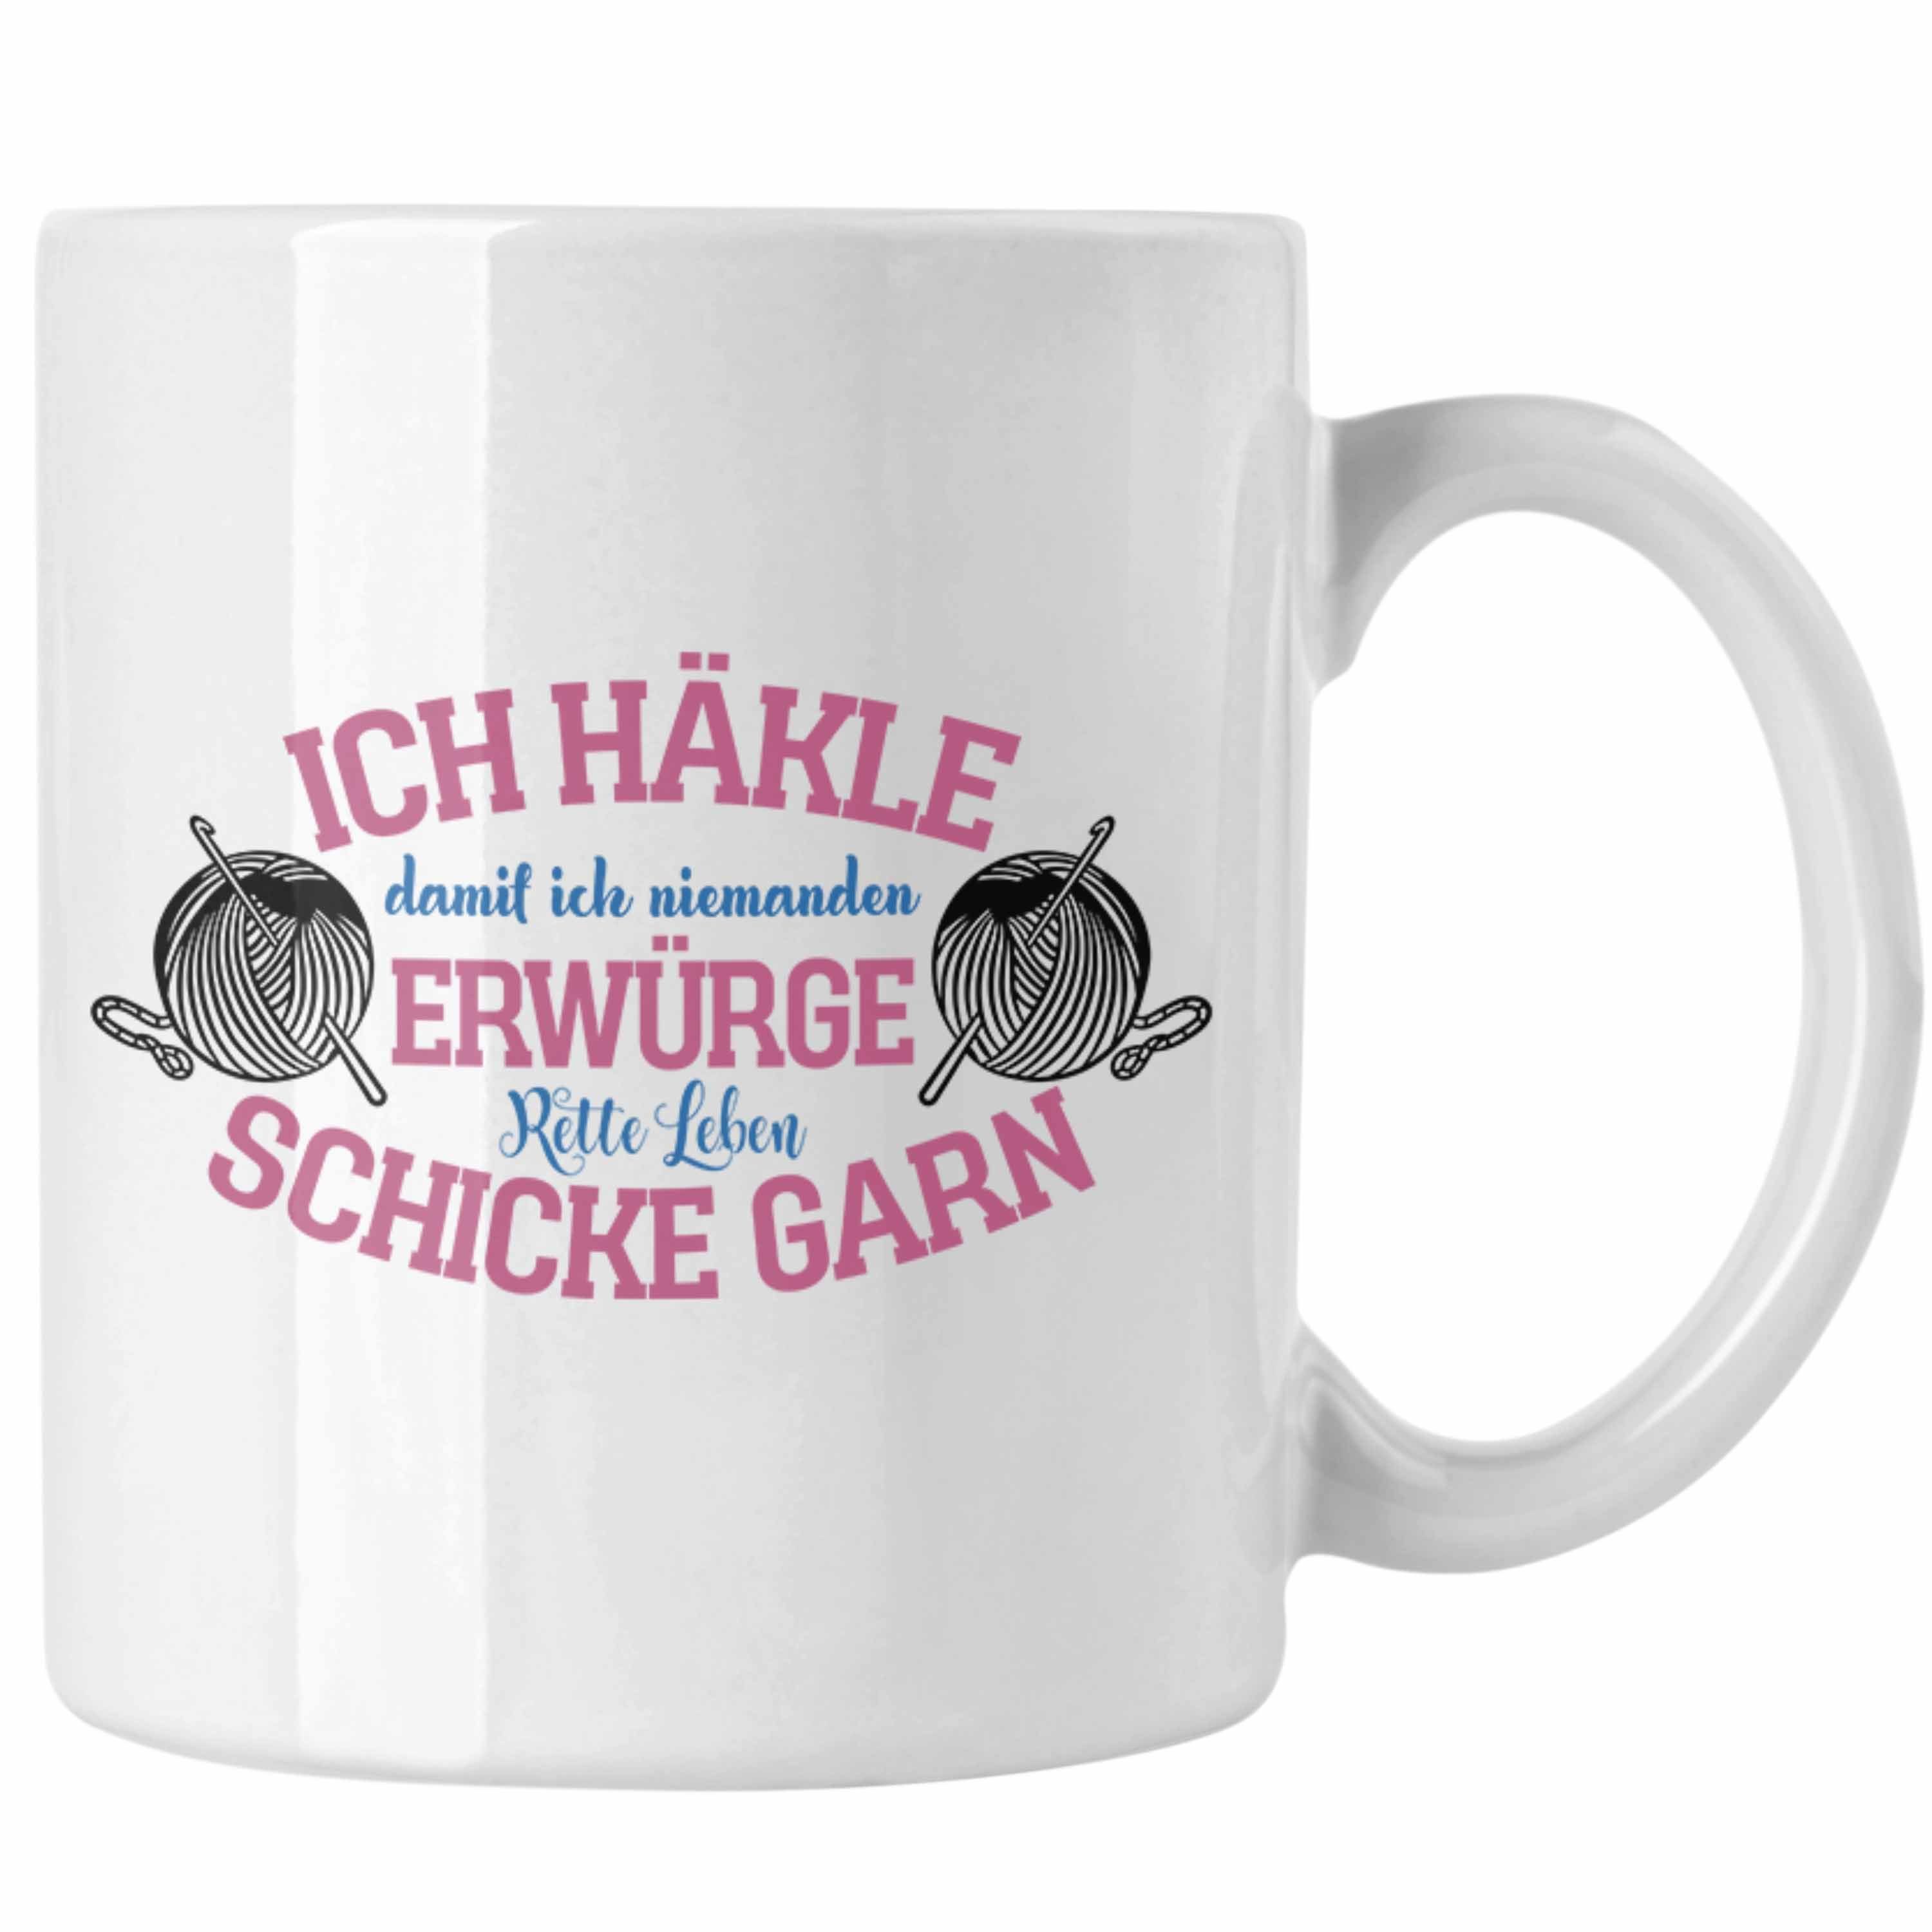 Trendation Tasse Garn-Tasse Geschenkidee für Strick- und Häkelbegeisterte Weiss